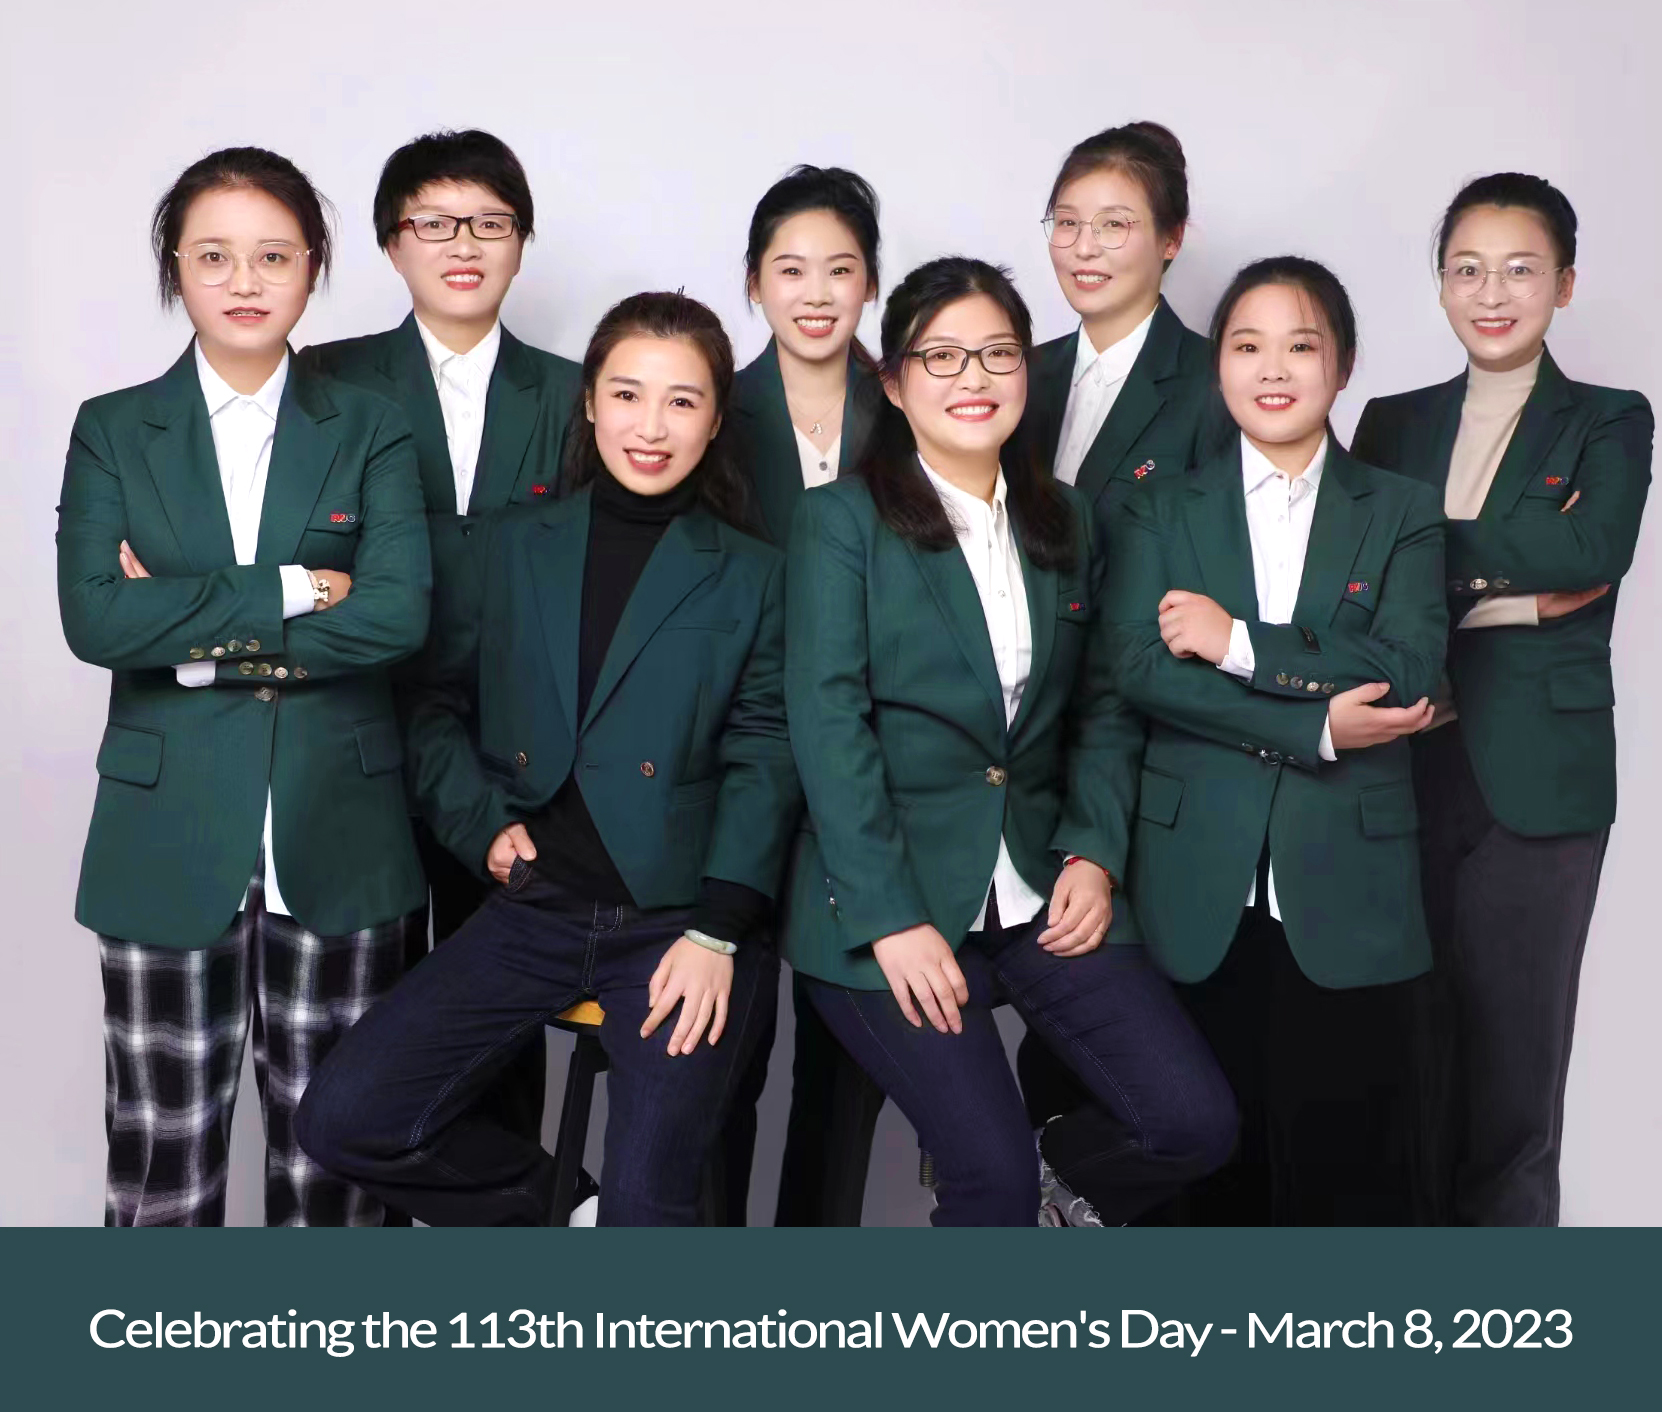 აღვნიშნავთ 113-ე ქალთა საერთაშორისო დღეს - 2023 წლის 8 მარტს